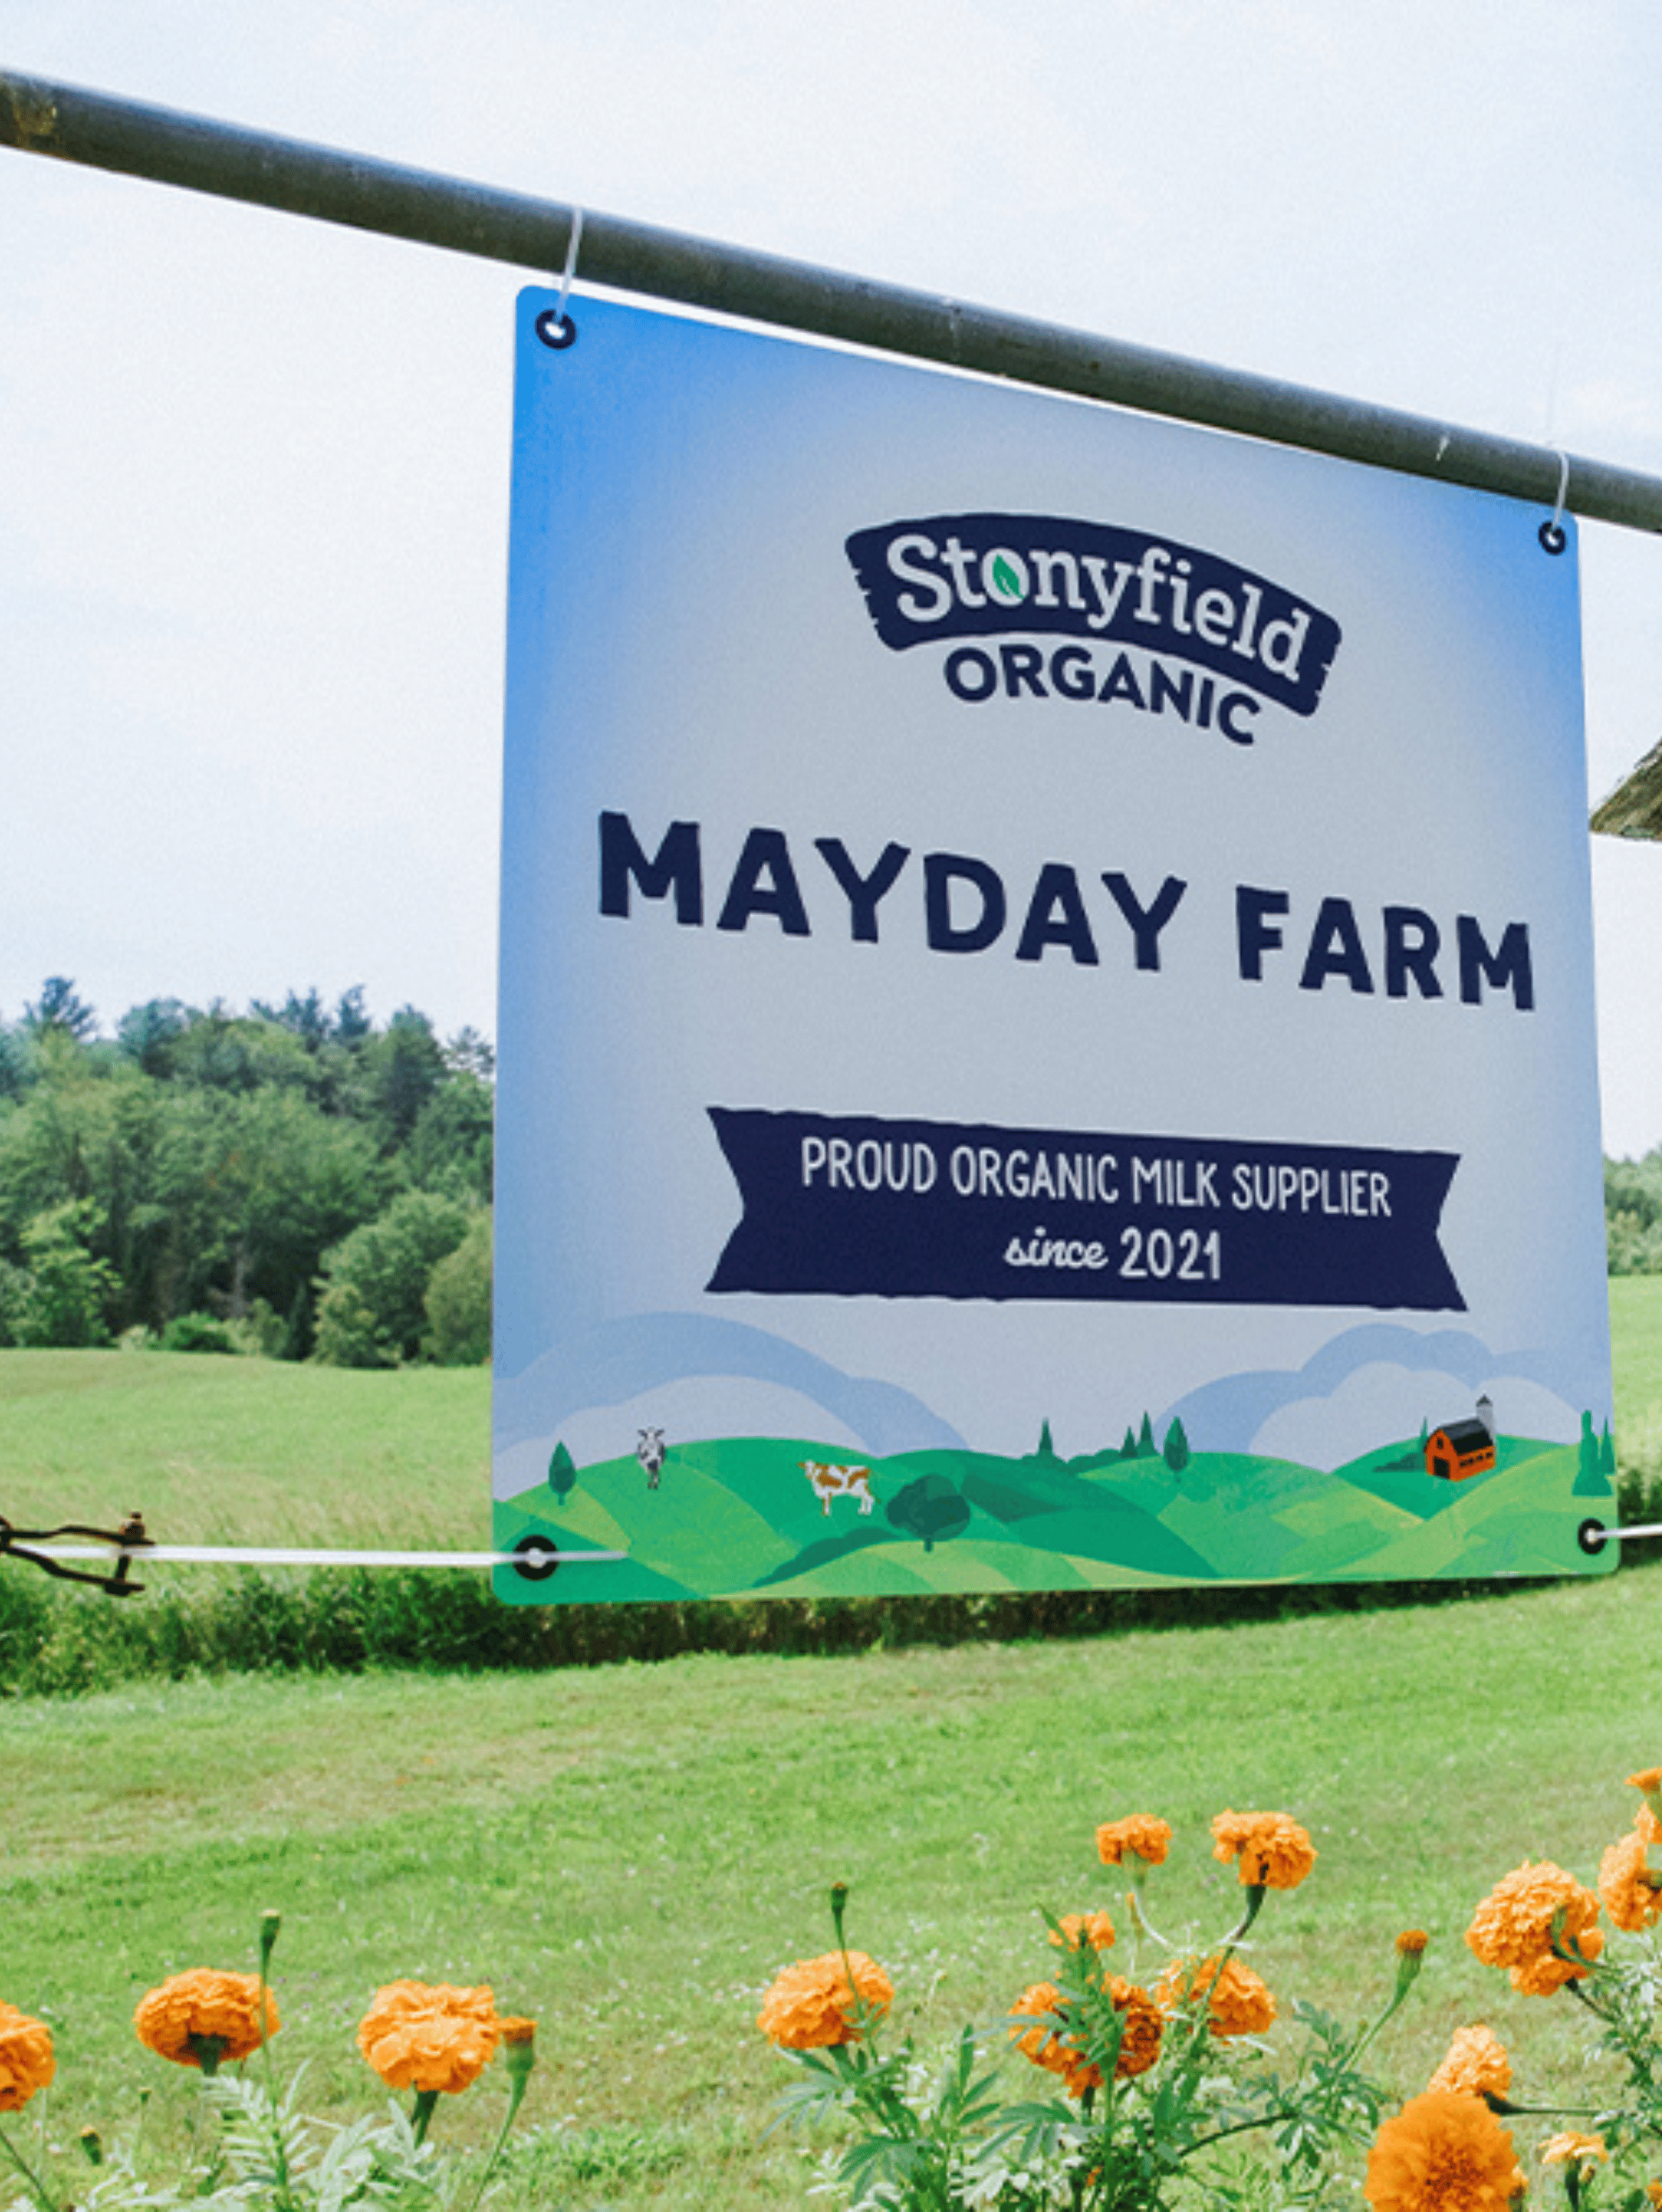 Mayday Farm